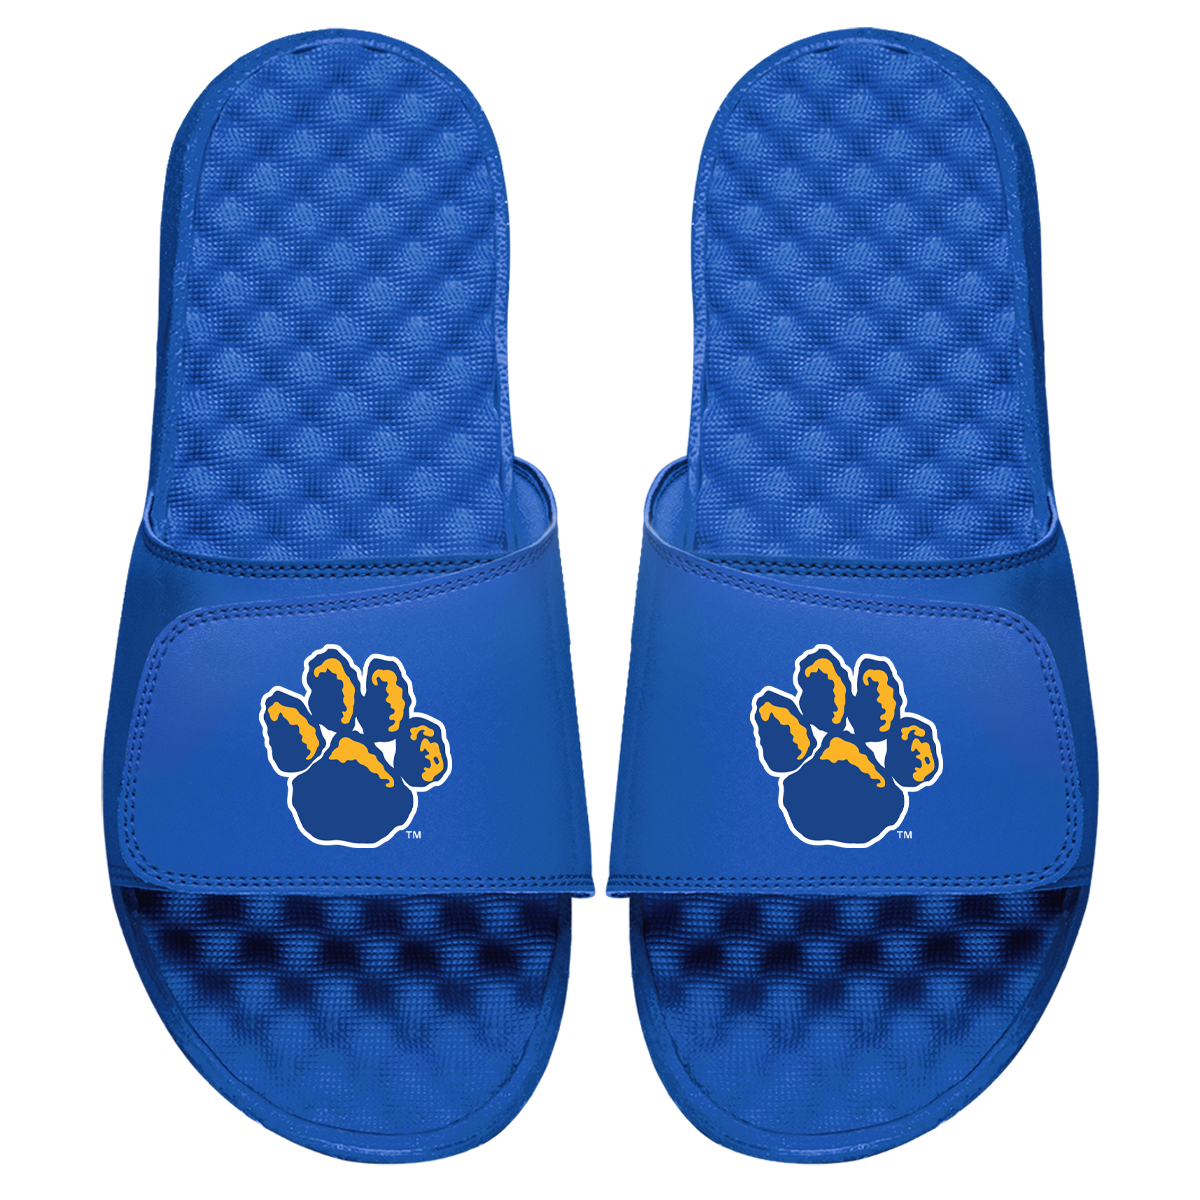 Pitt Mascot Paw Slides